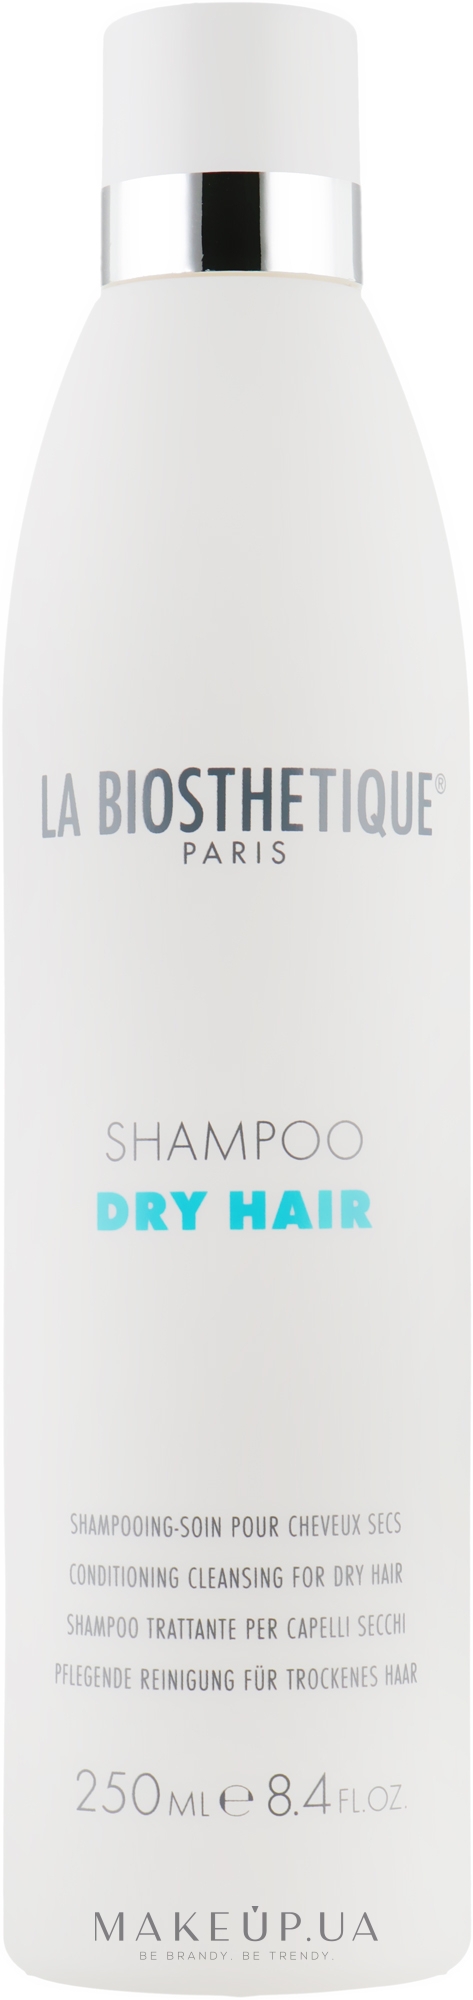 М'яко очищаючий шампунь для сухого волосся - La Biosthetique Dry Hair Shampoo — фото 250ml